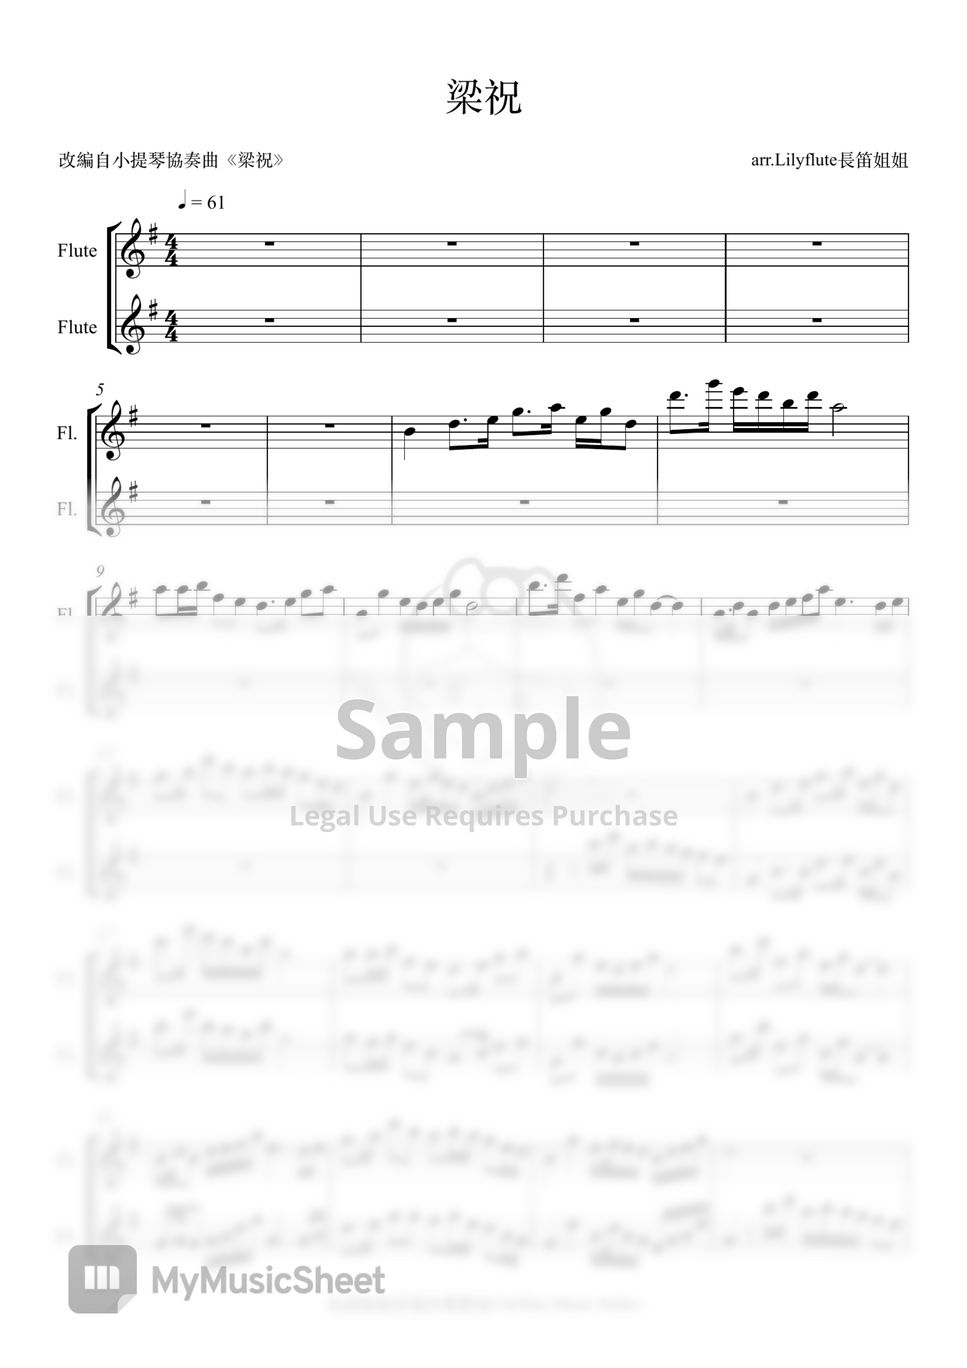 小提琴名曲 - 梁祝二重奏版 (可搭配免費伴奏) by Lily Flute 長笛姐姐